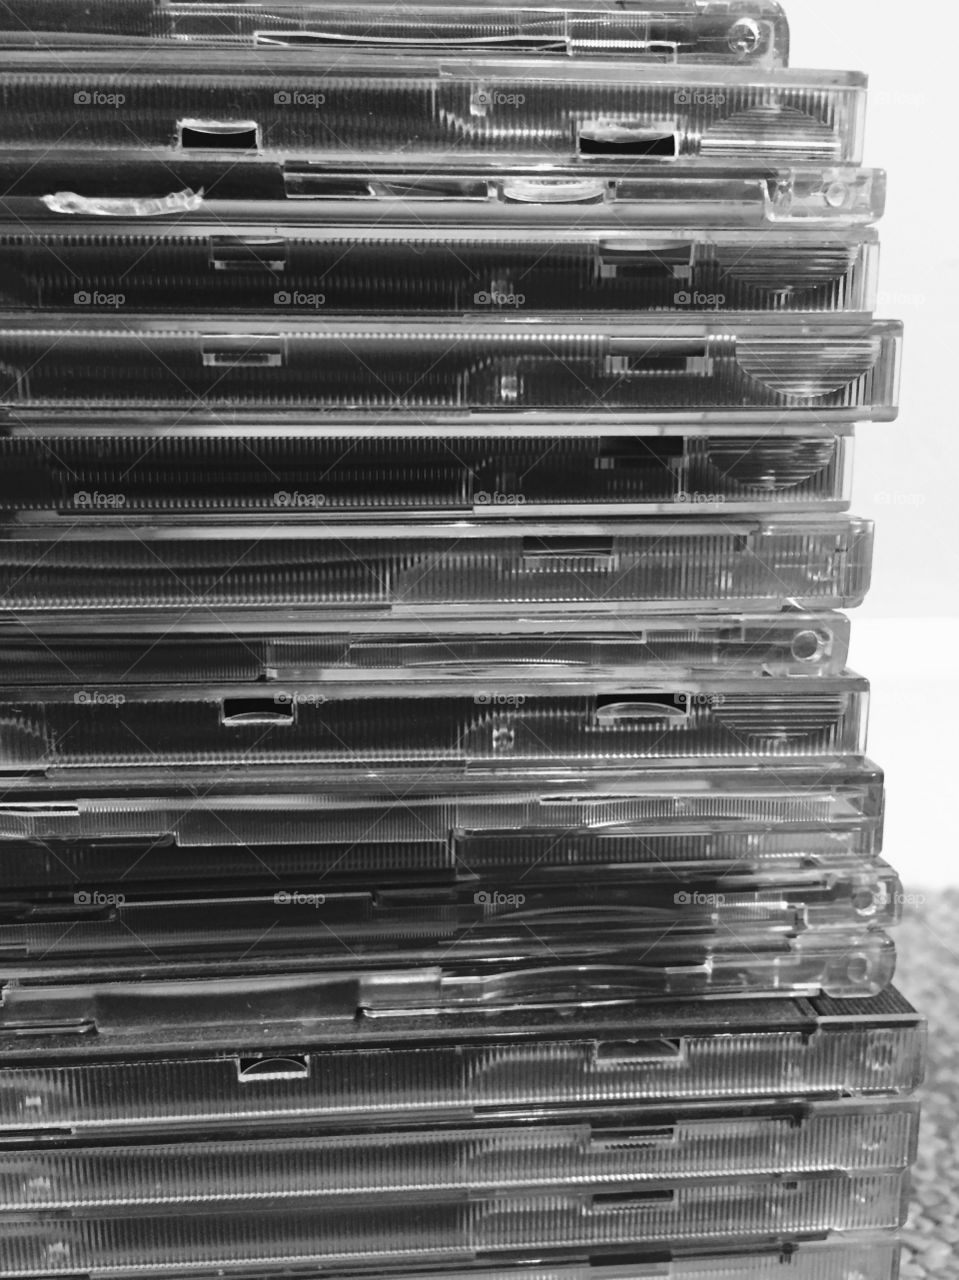 CD cases